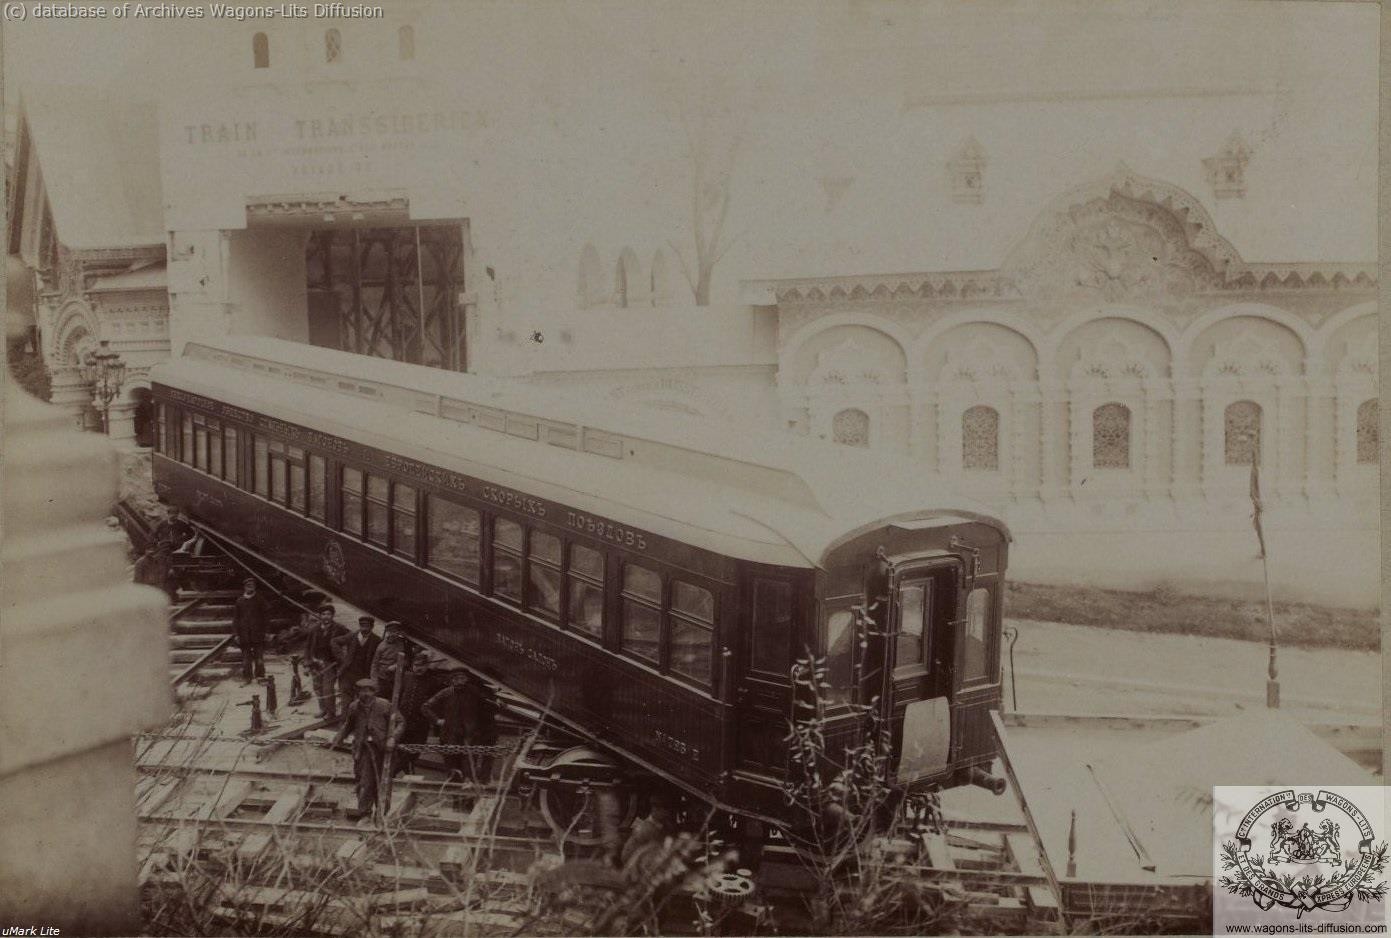 Wl expo universelle paris 1900 mise en place du vl transsiberien 3